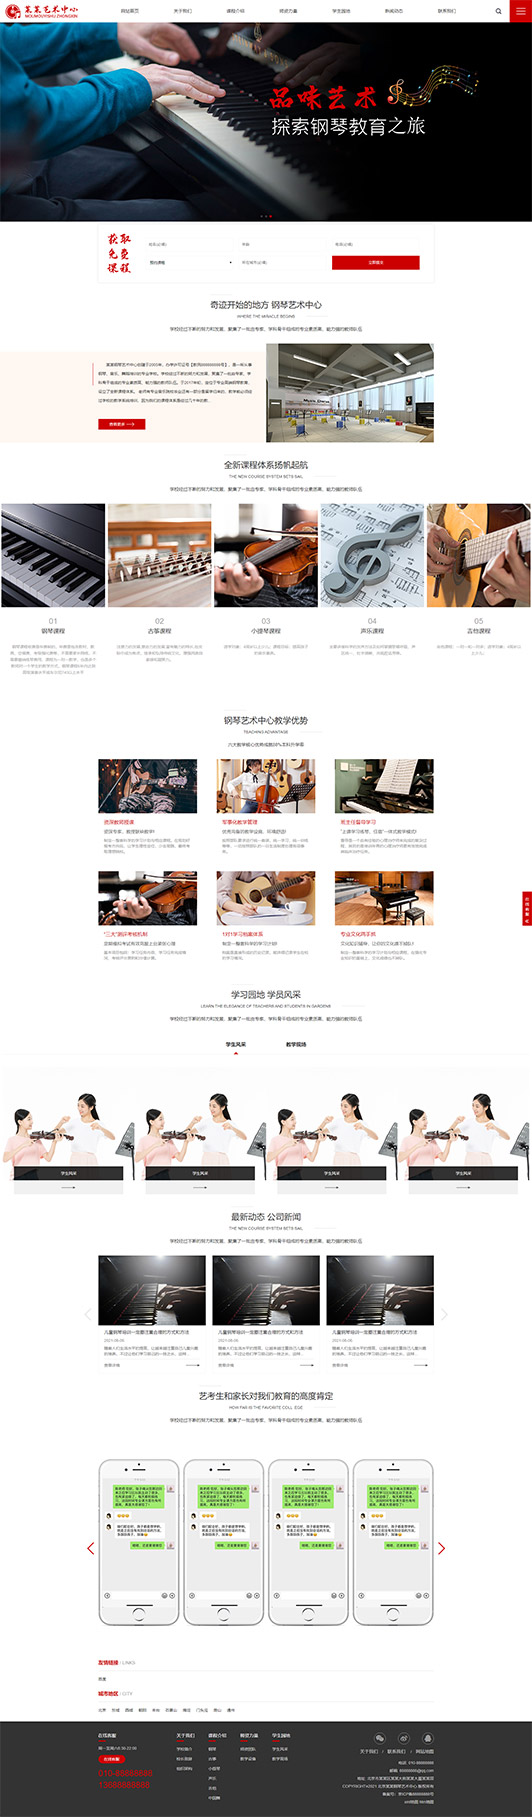 朝阳钢琴艺术培训公司响应式企业网站